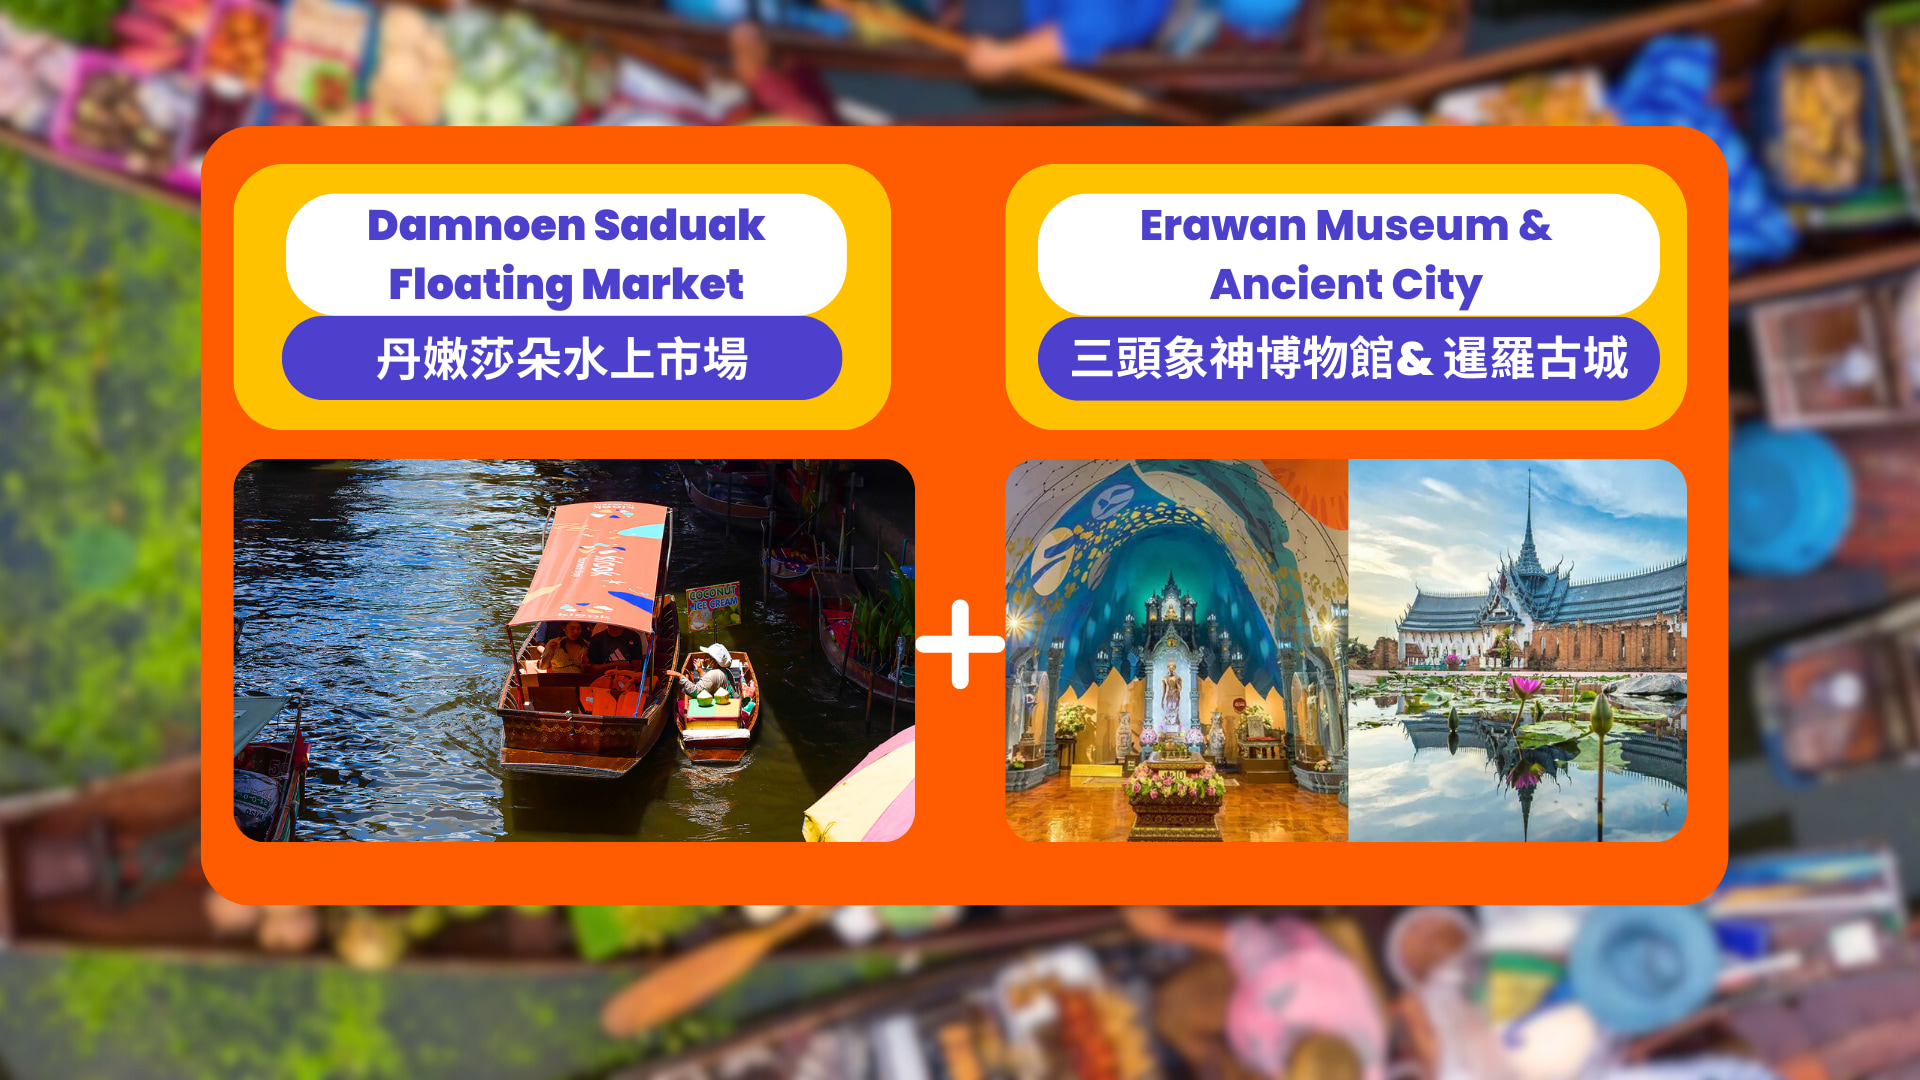 丹嫩沙多水上市場 & 暹羅古城 & 三頭神象博物館一日遊（曼谷出發）